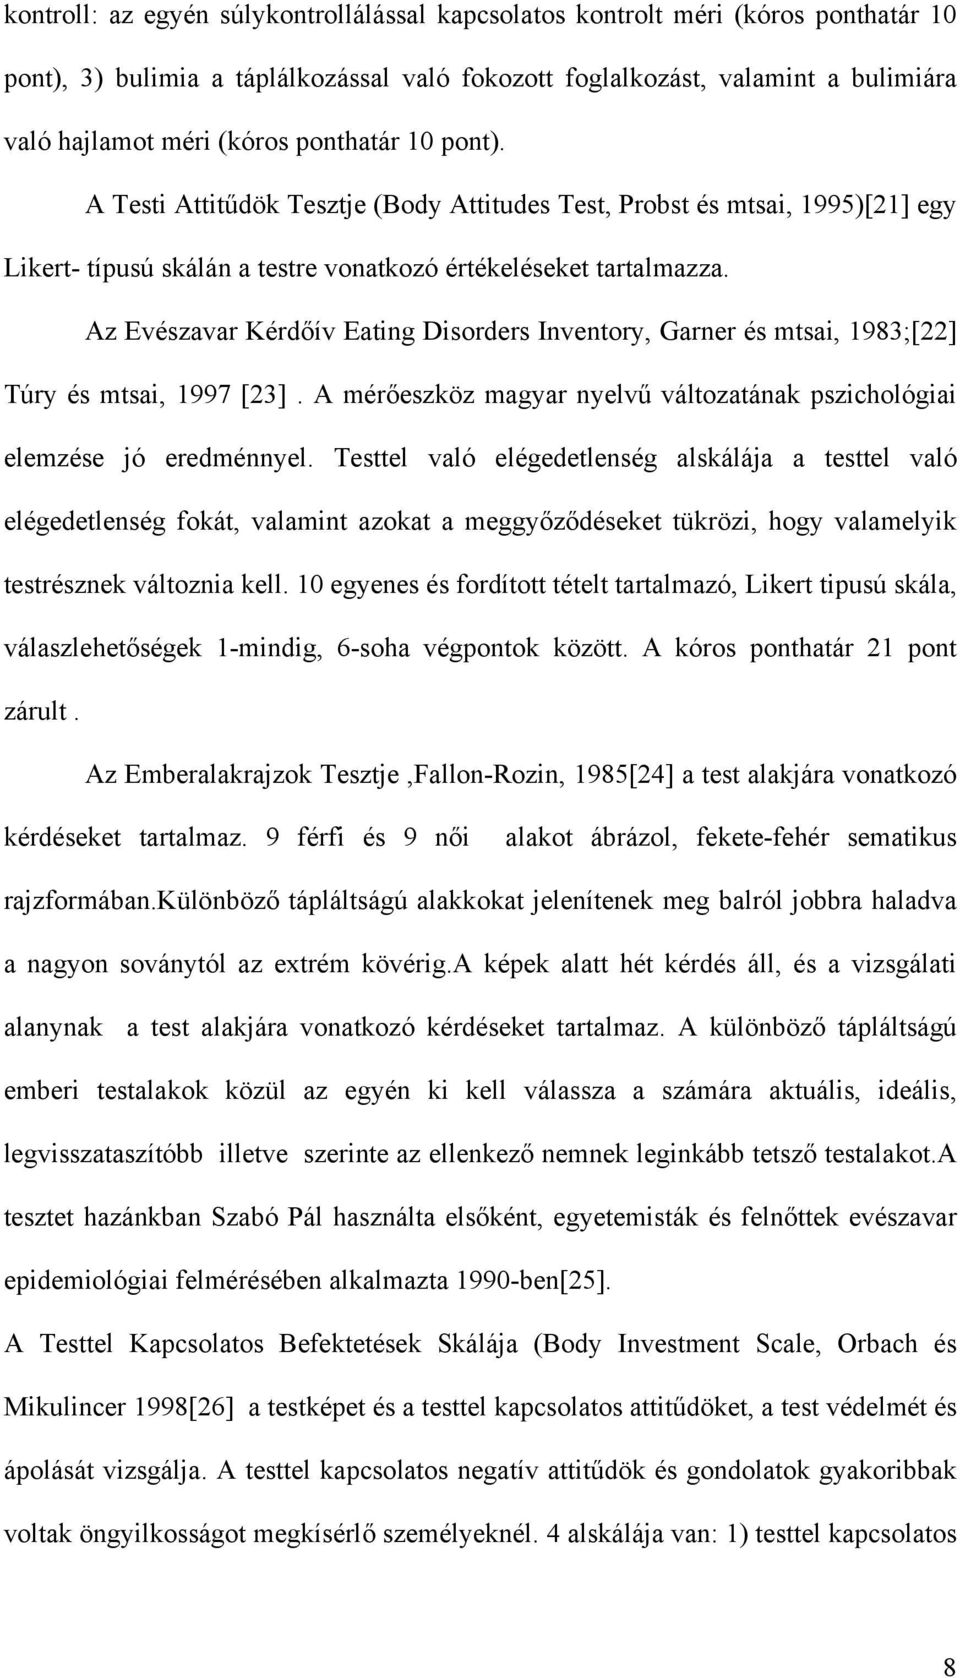 Az Evészavar Kérdőív Eating Disorders Inventory, Garner és mtsai, 1983;[22] Túry és mtsai, 1997 [23]. A mérőeszköz magyar nyelvű változatának pszichológiai elemzése jó eredménnyel.